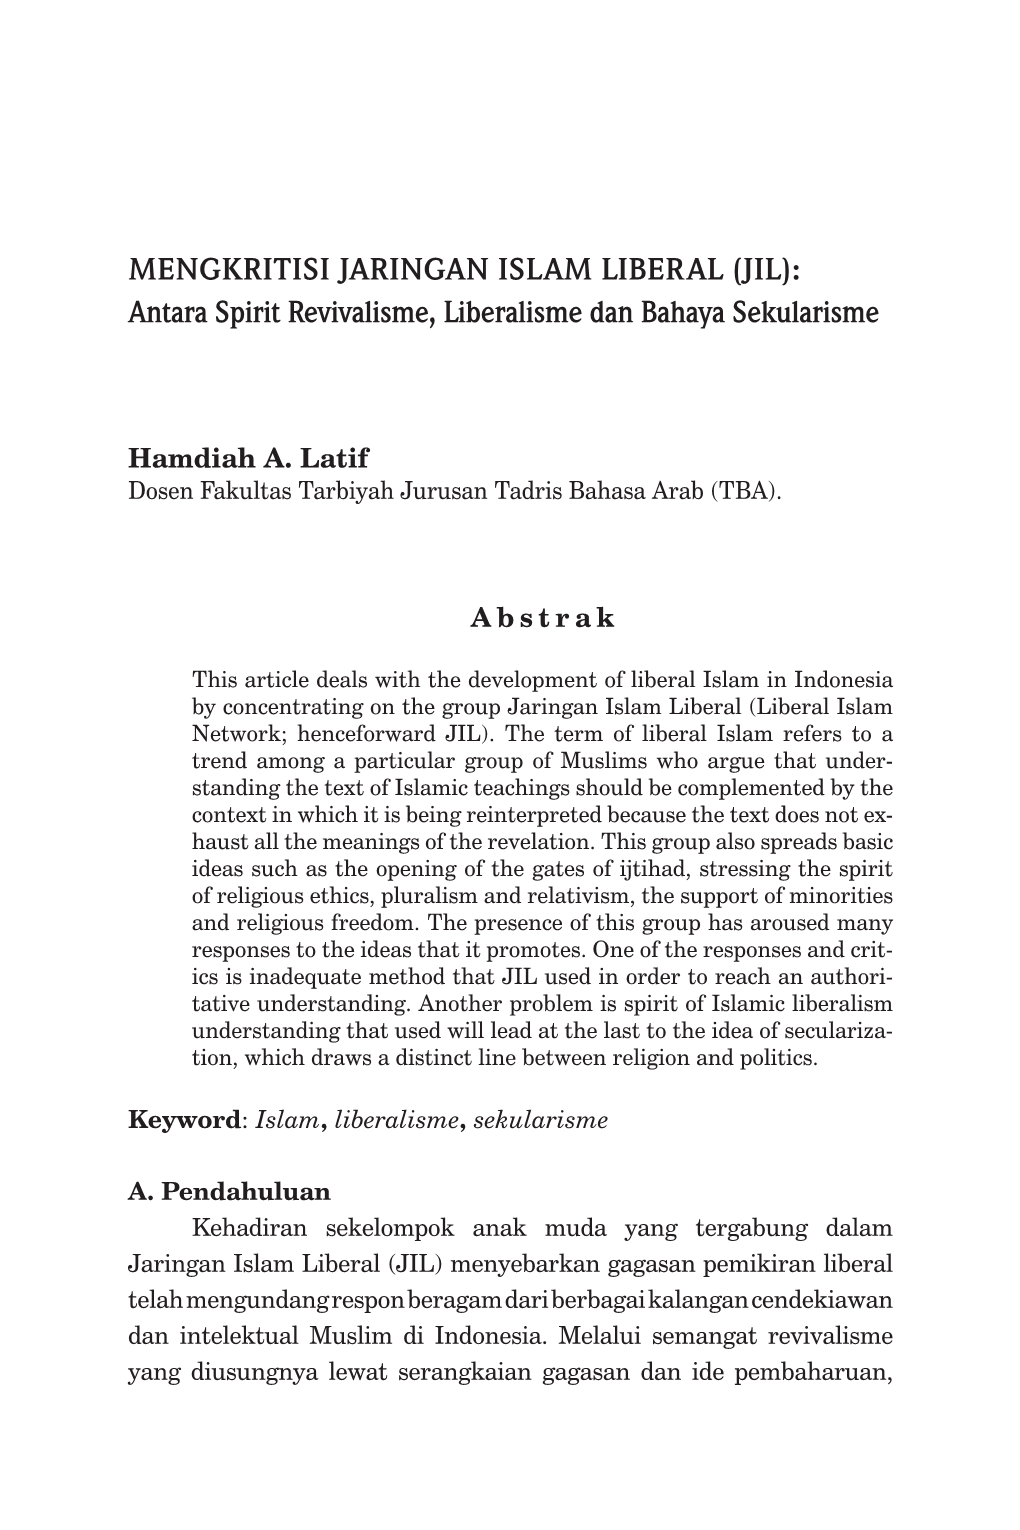 MENGKRITISI JARINGAN ISLAM LIBERAL (JIL): Antara Spirit Revivalisme, Liberalisme Dan Bahaya Sekularisme